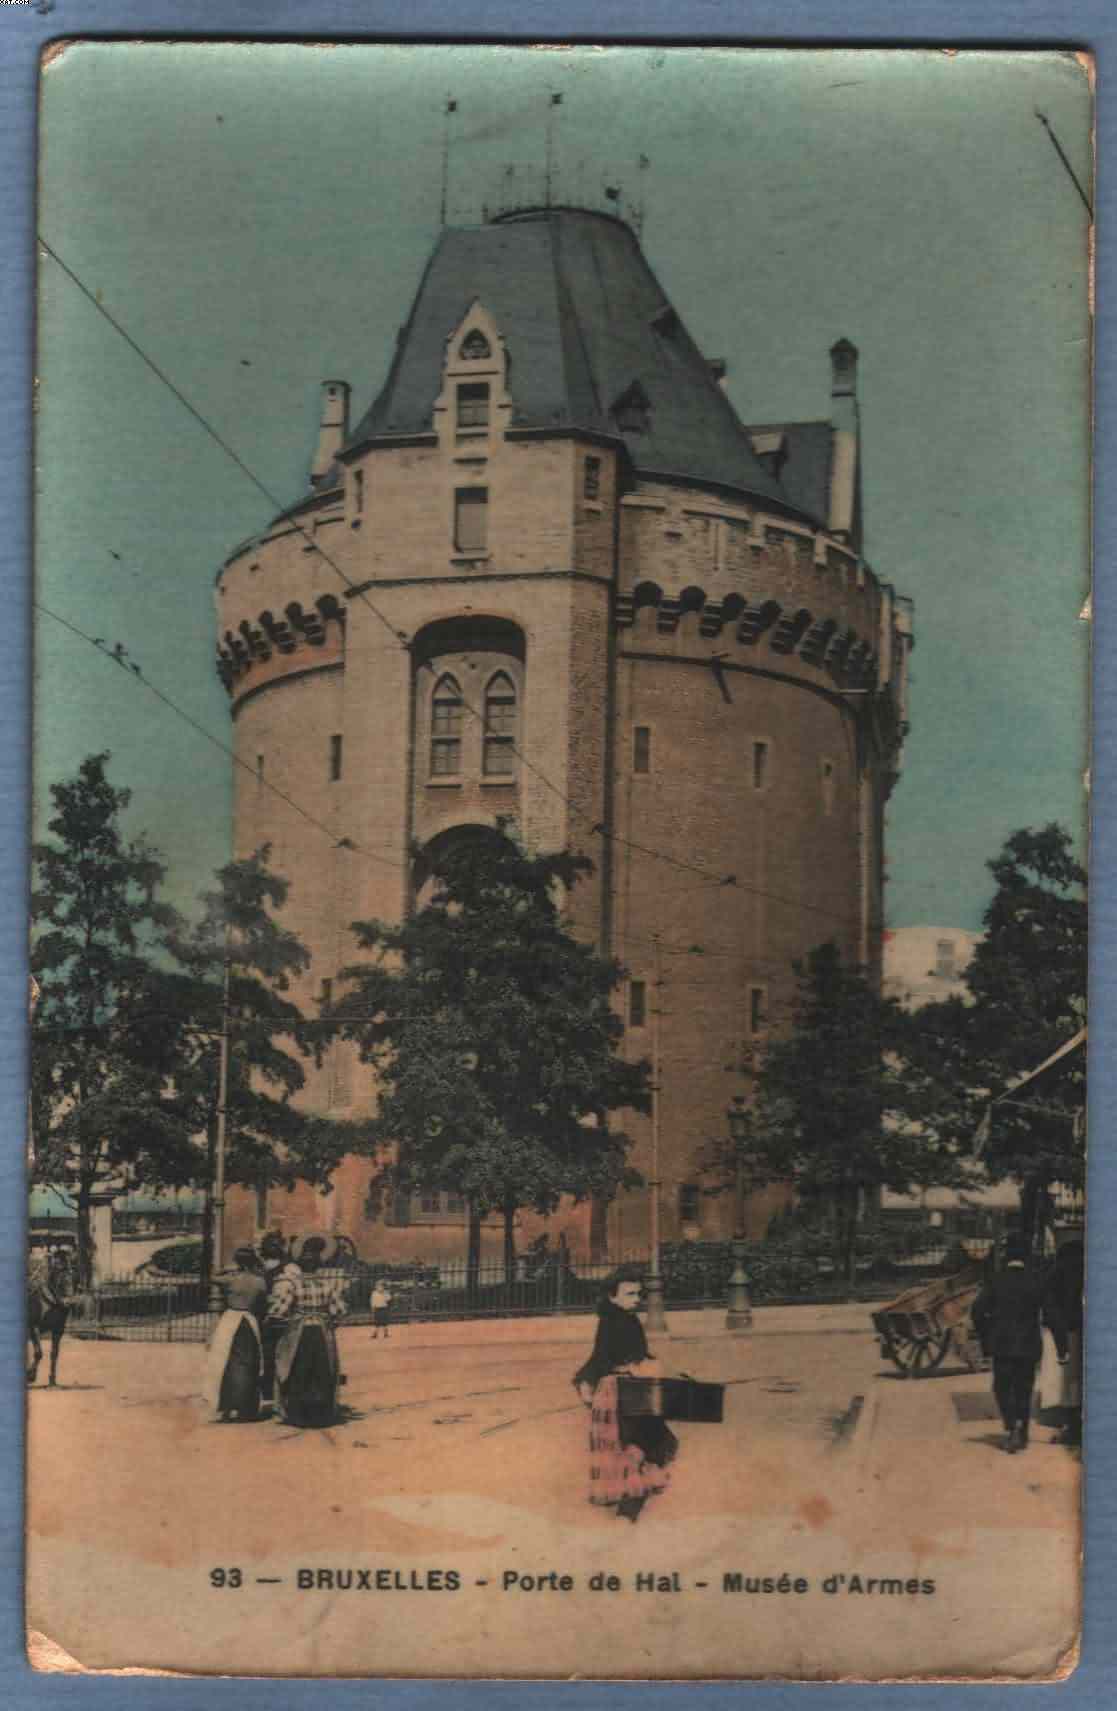 * BRUXELLES - BRUSSEL * (Edition Grand Bazar Anspach Nr. 93) Porte De Hal, Musée D'armes, De Halletoren, Wapenmuseum - Museen